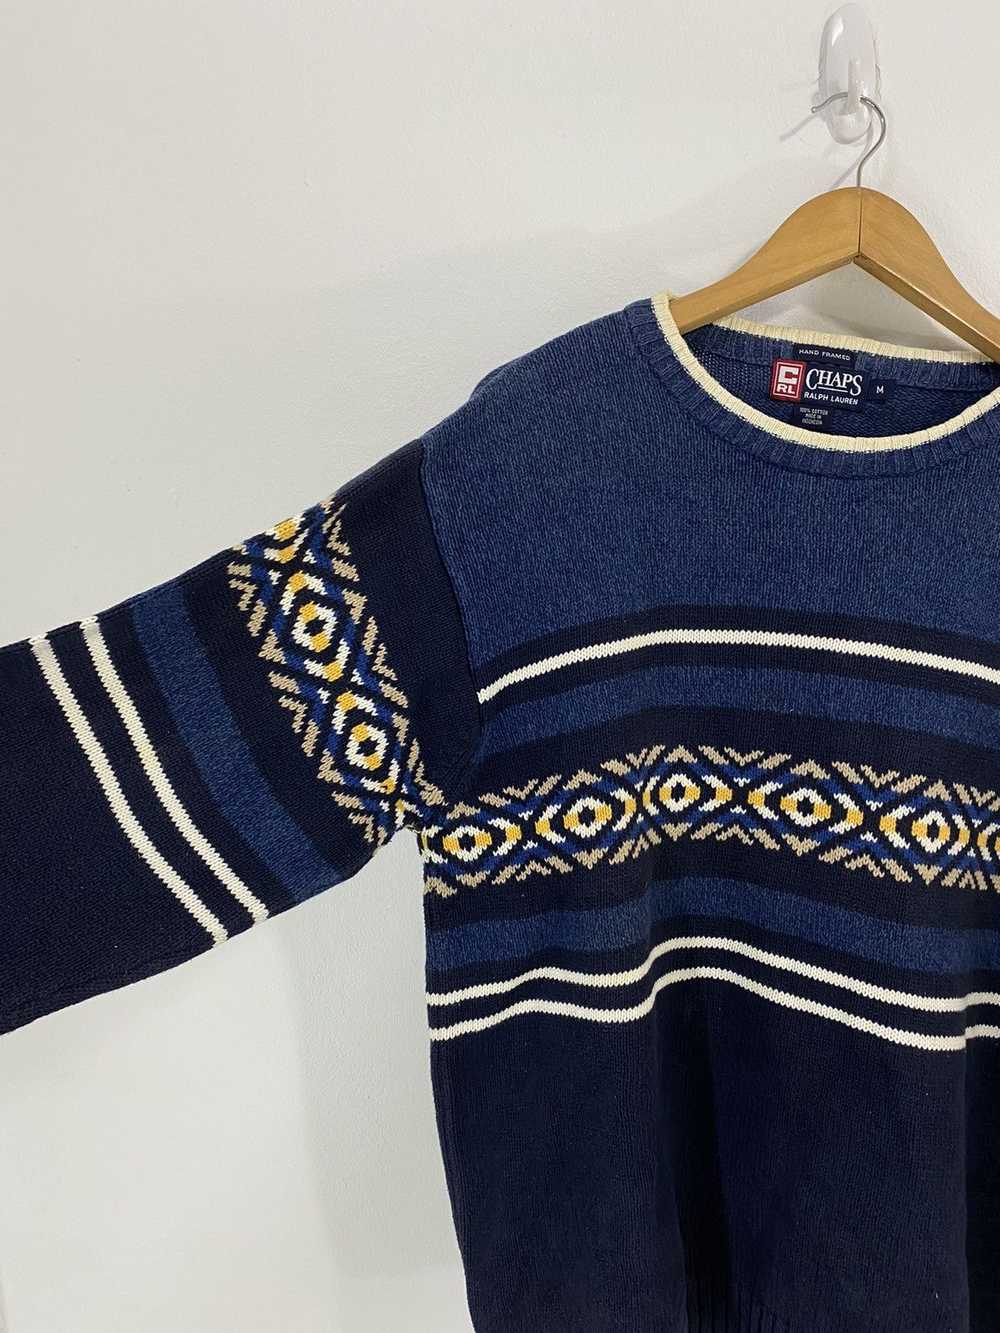 Polo Ralph Lauren Chaps Ralph Lauren Knitted Wear… - image 5